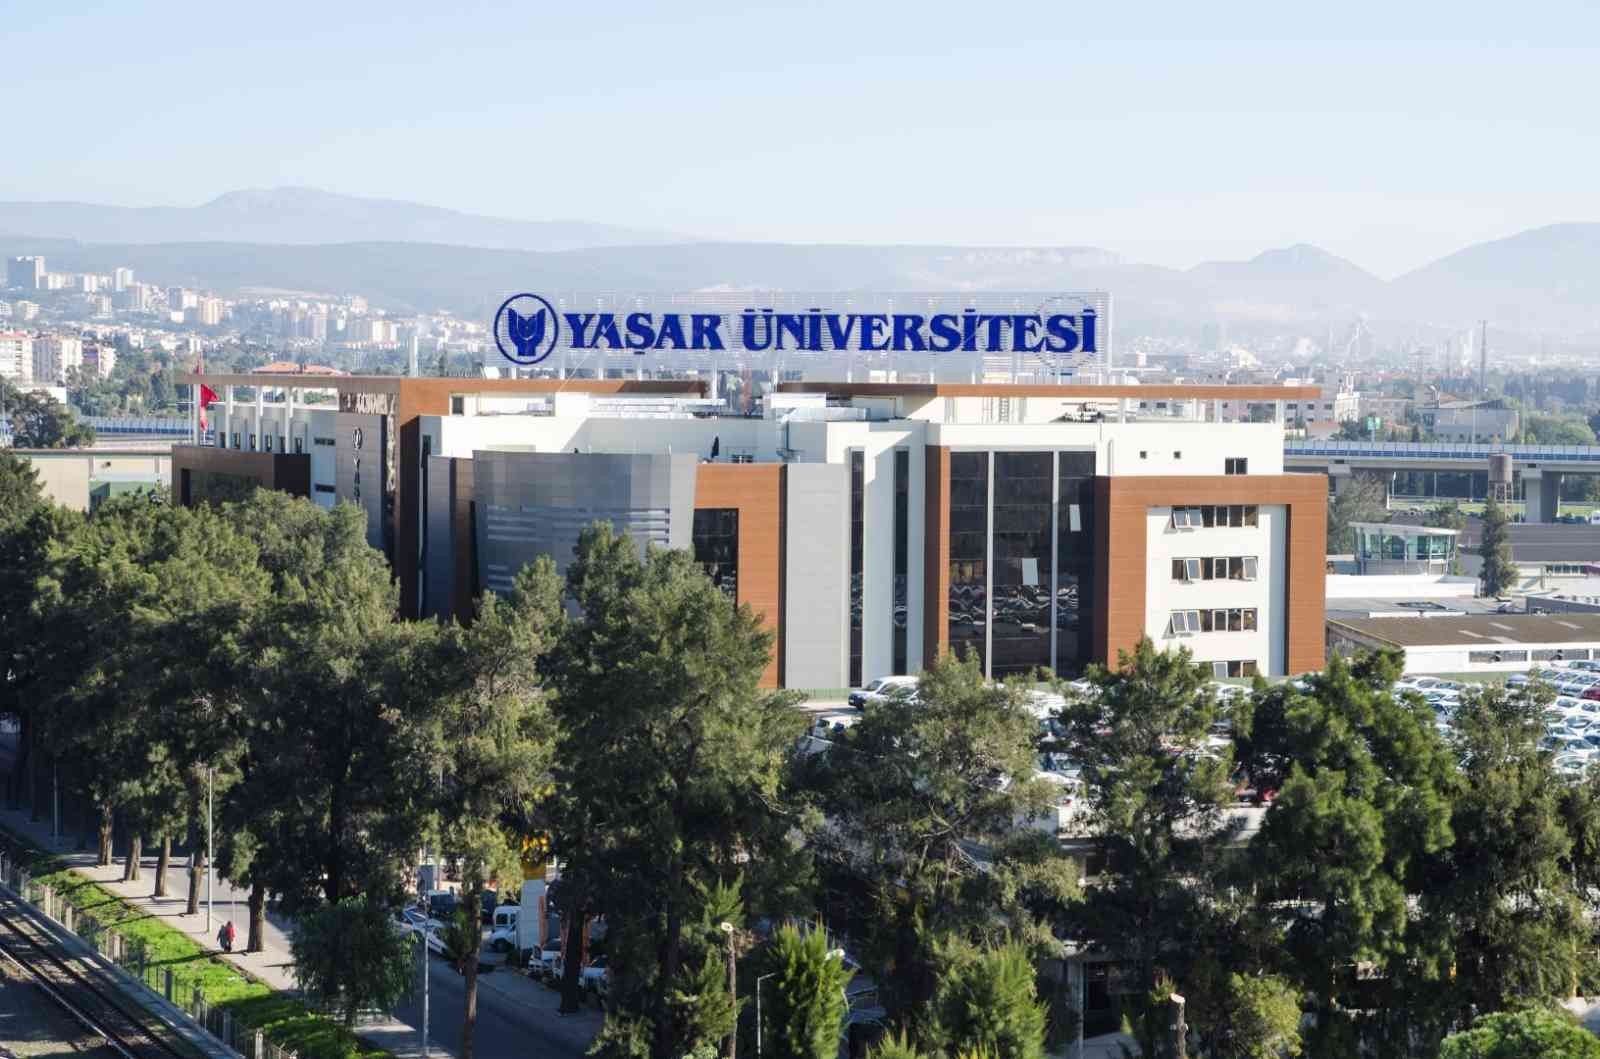 Yaşar Üniversitesine ‘Sıfır Atık’ belgesi #izmir